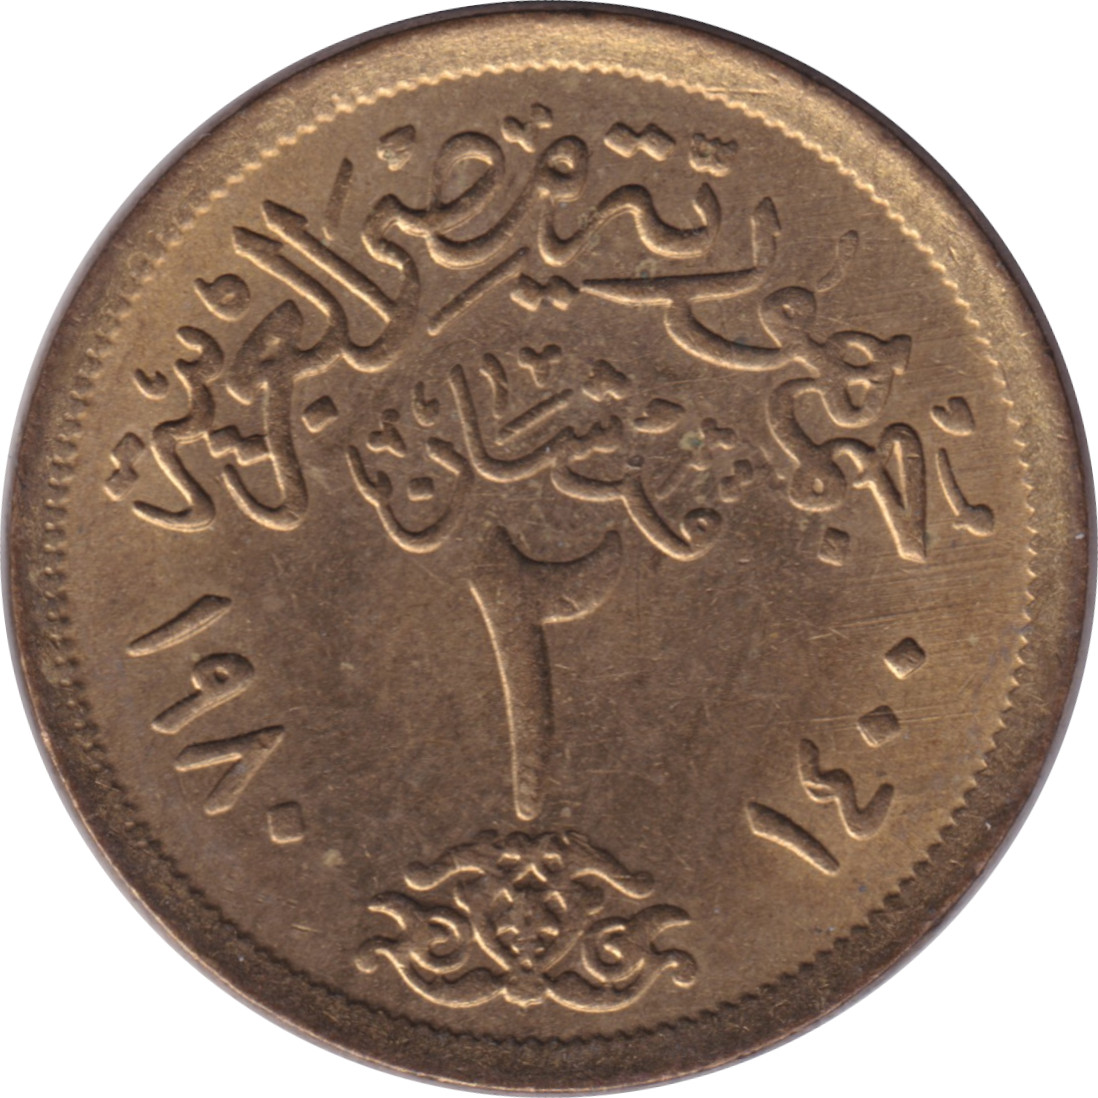 2 piastres - République Arabe Unie